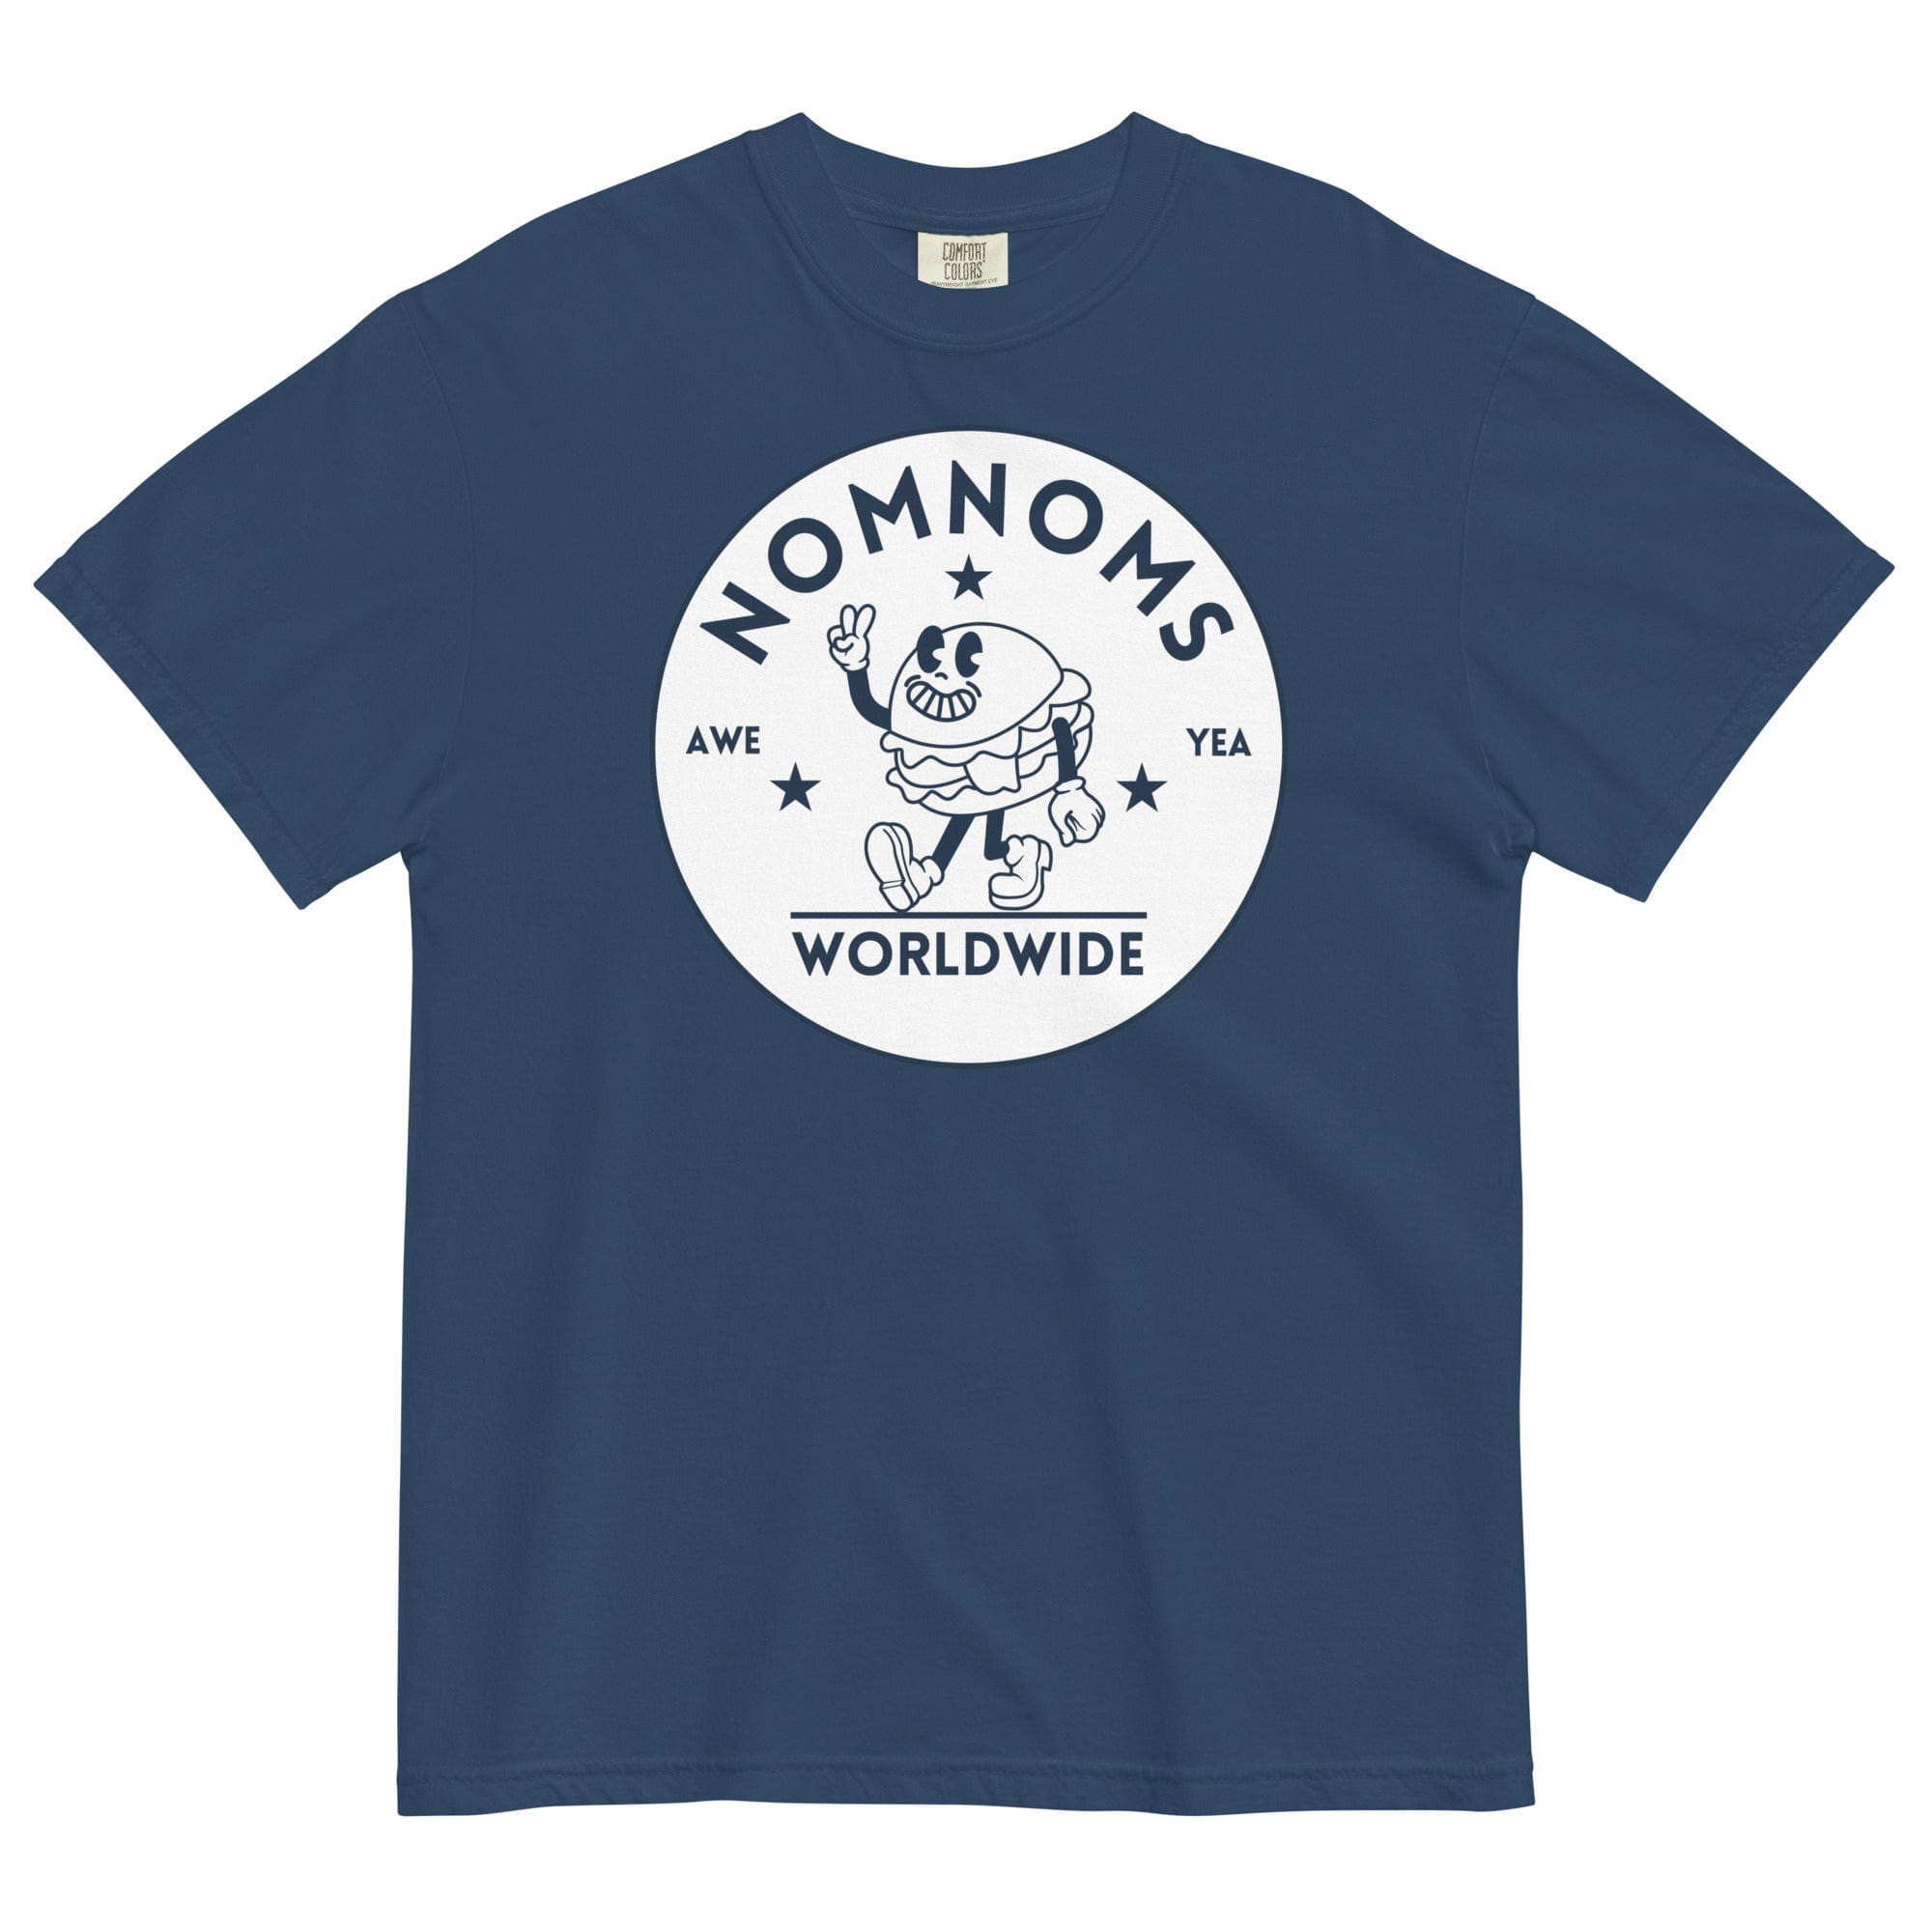 Nomnoms Worldwide Garment-dyed Heavyweight T-shirt True Navy / S Shirts & Tops Jolly & Goode